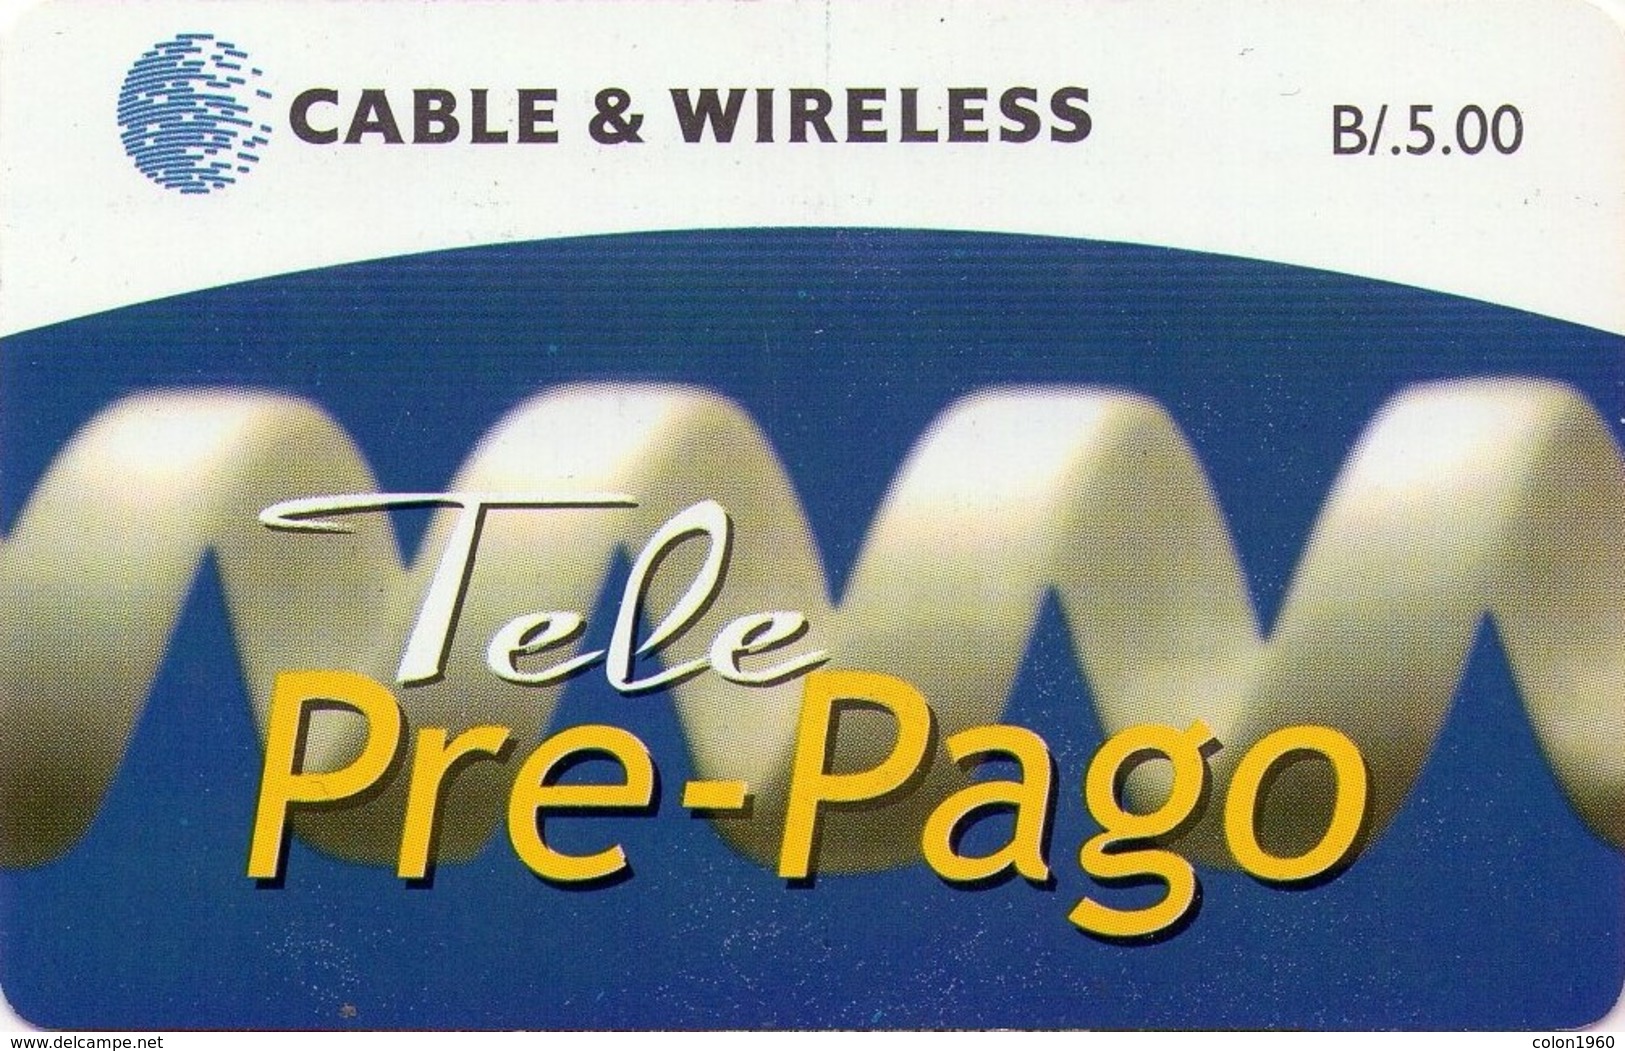 PANAMA. PAN-C&W-133. TELE PRE-PAGO. B/5.00. 06-2011. (005) - Panama